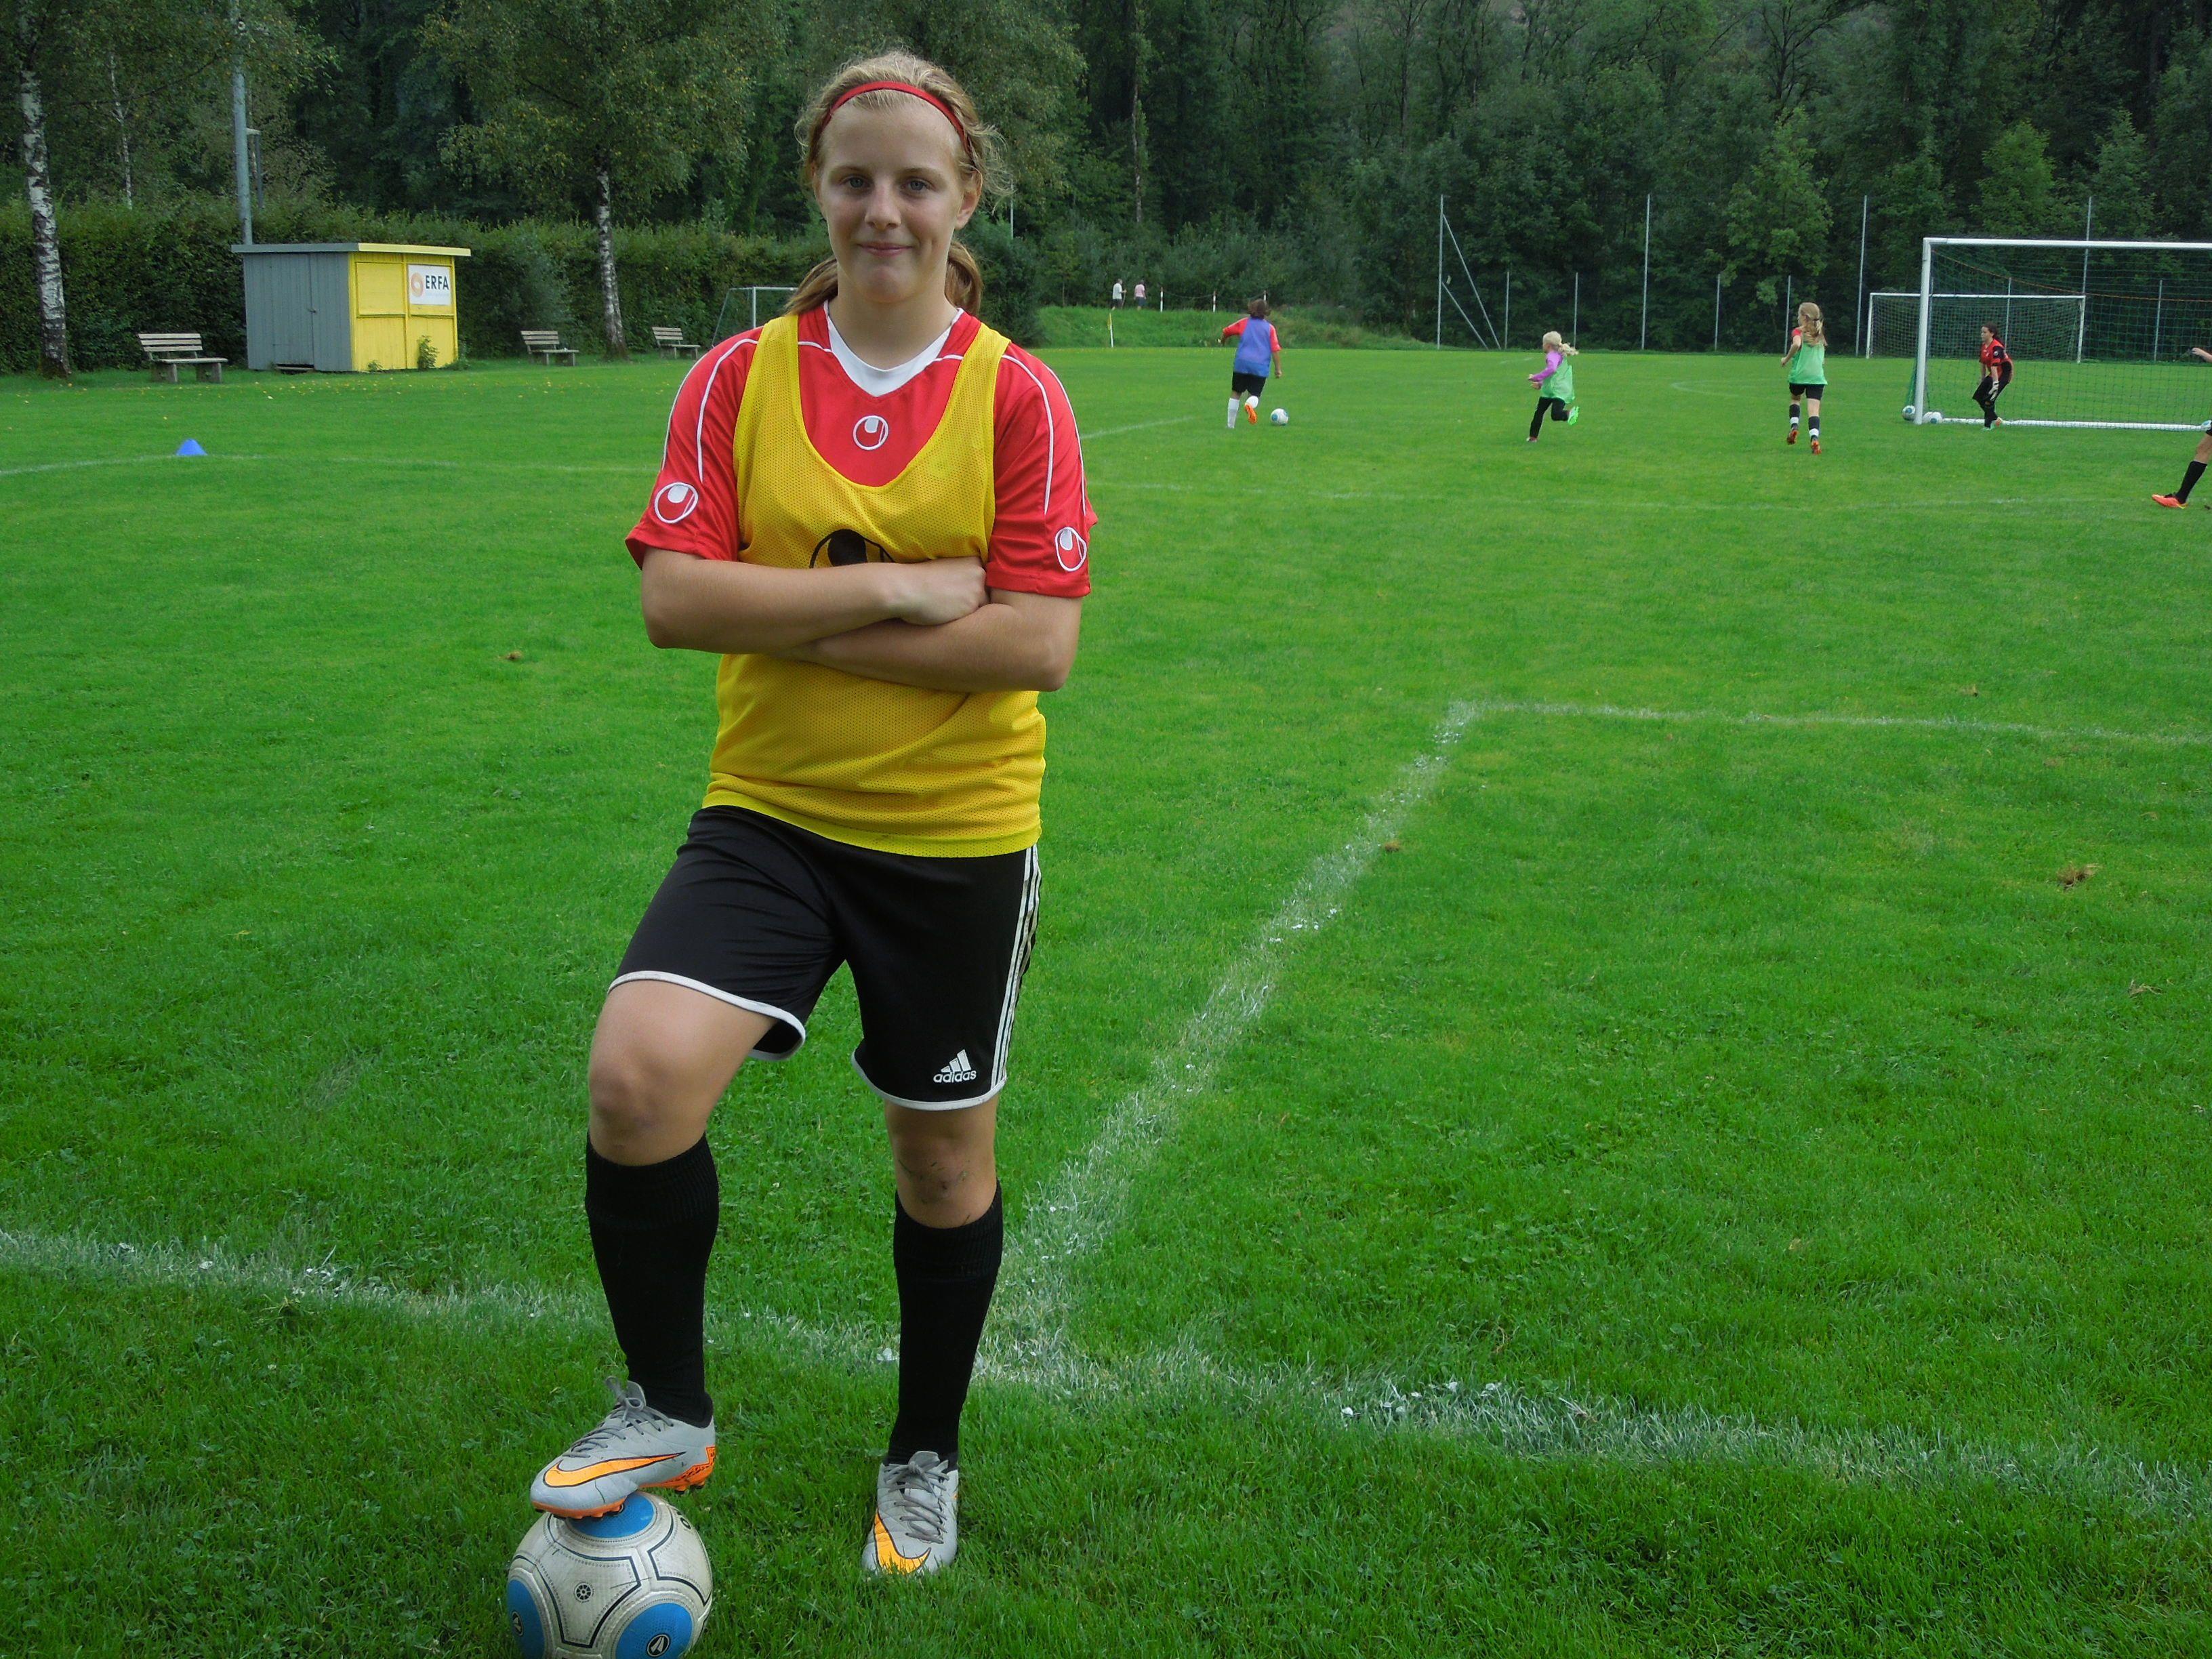 Celine Diem gehört zu den Nachwuchshoffnungen im Ländle Frauenfußball.